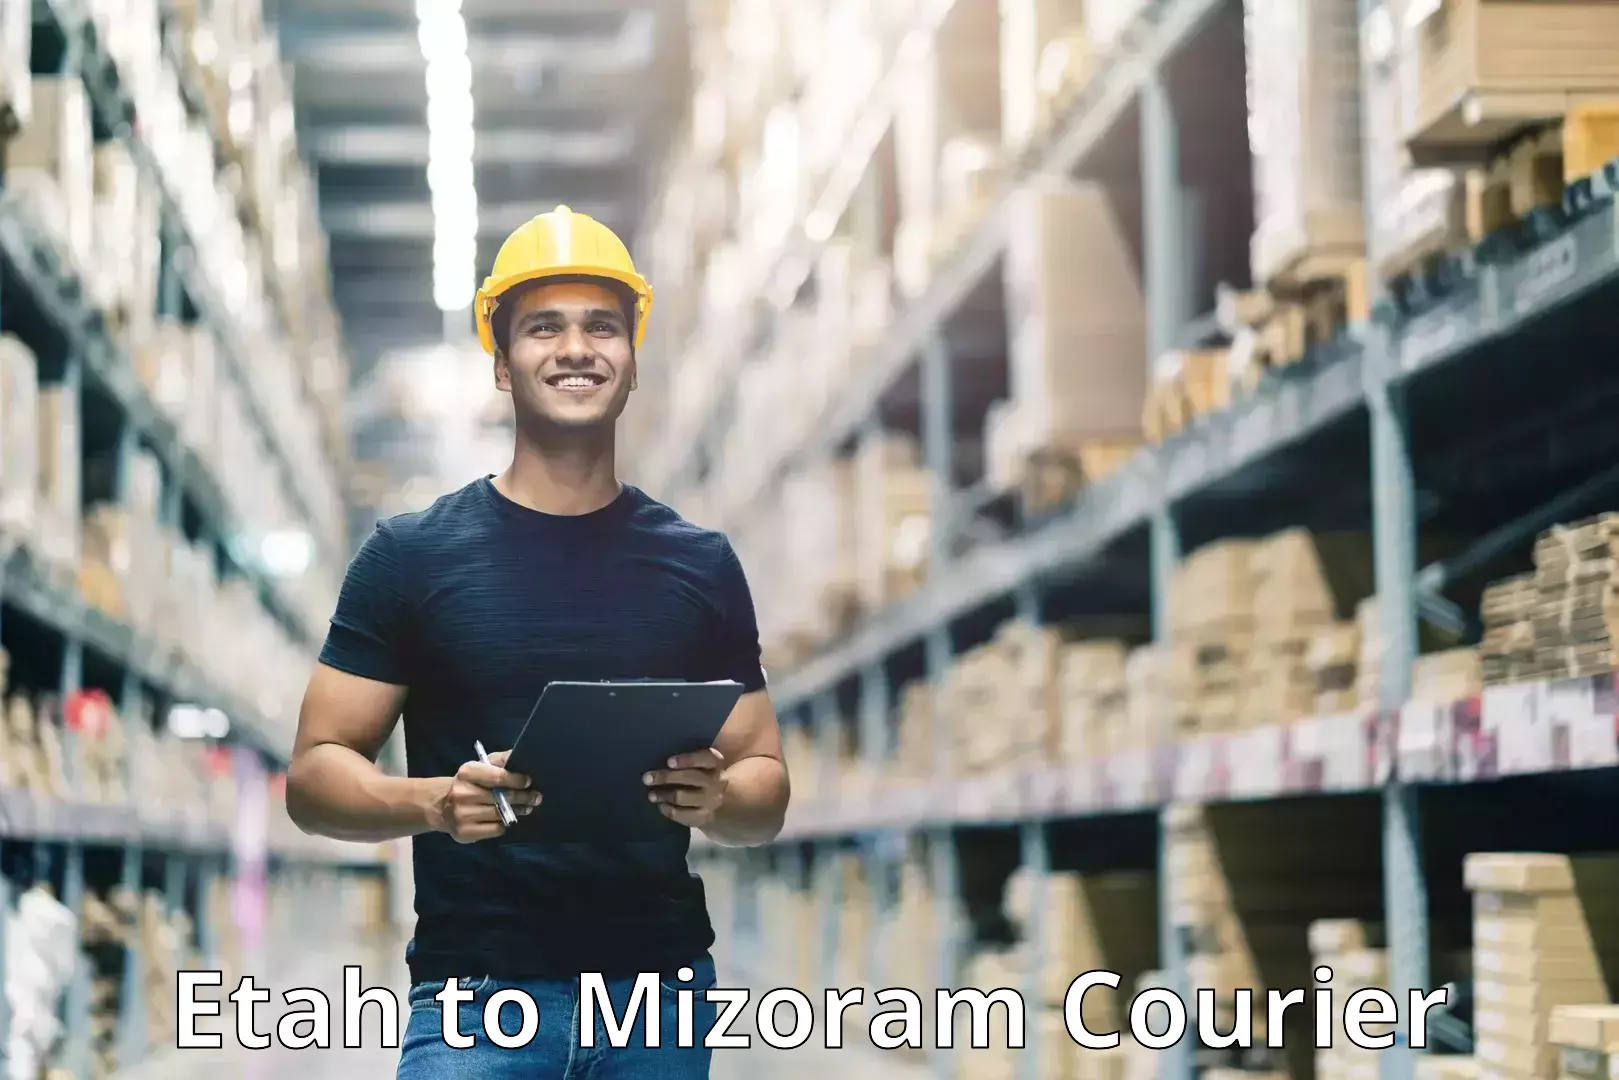 Customer-focused courier Etah to Mizoram